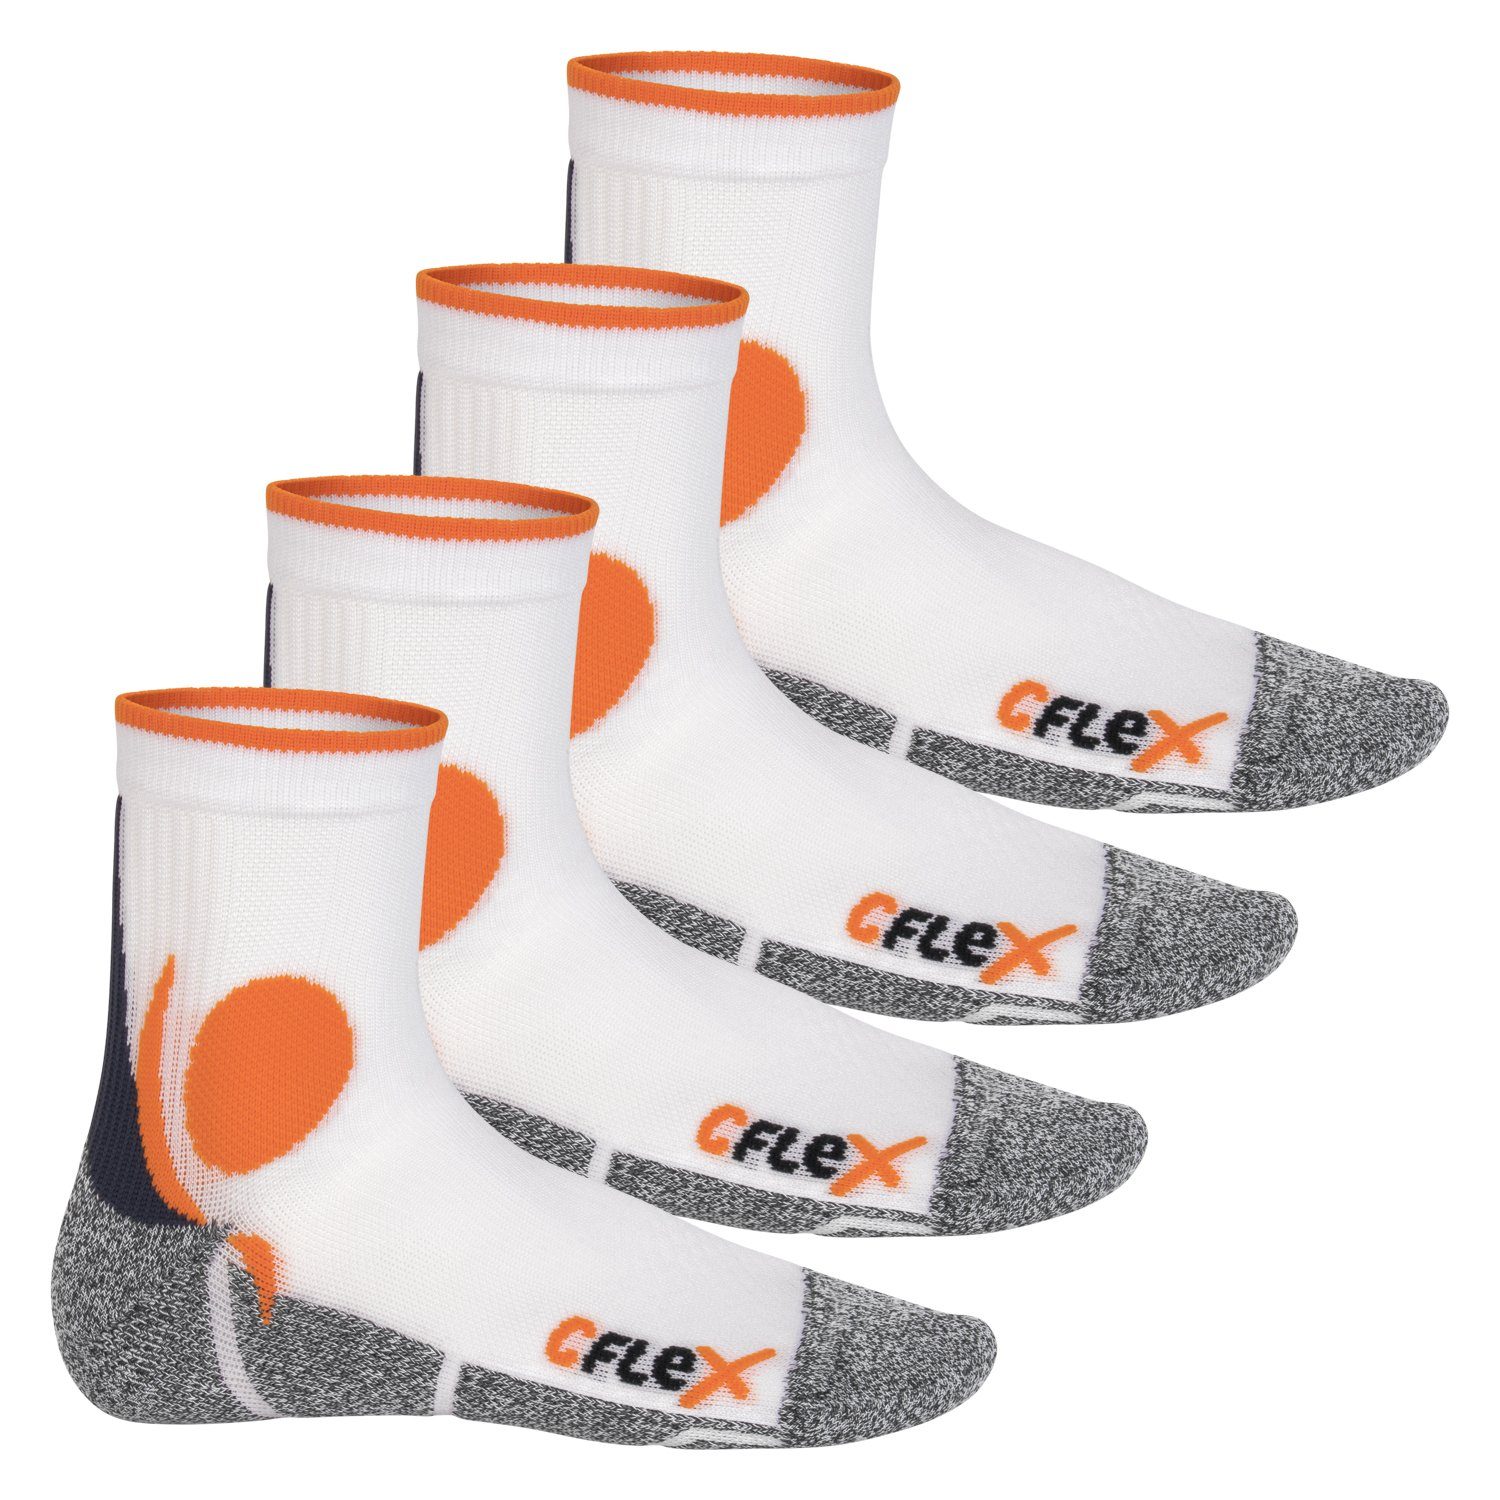 CFLEX Sportsocken Damen und Herren Running Funktions-Socken (4 Paar) Laufsocken Weiss/Orange